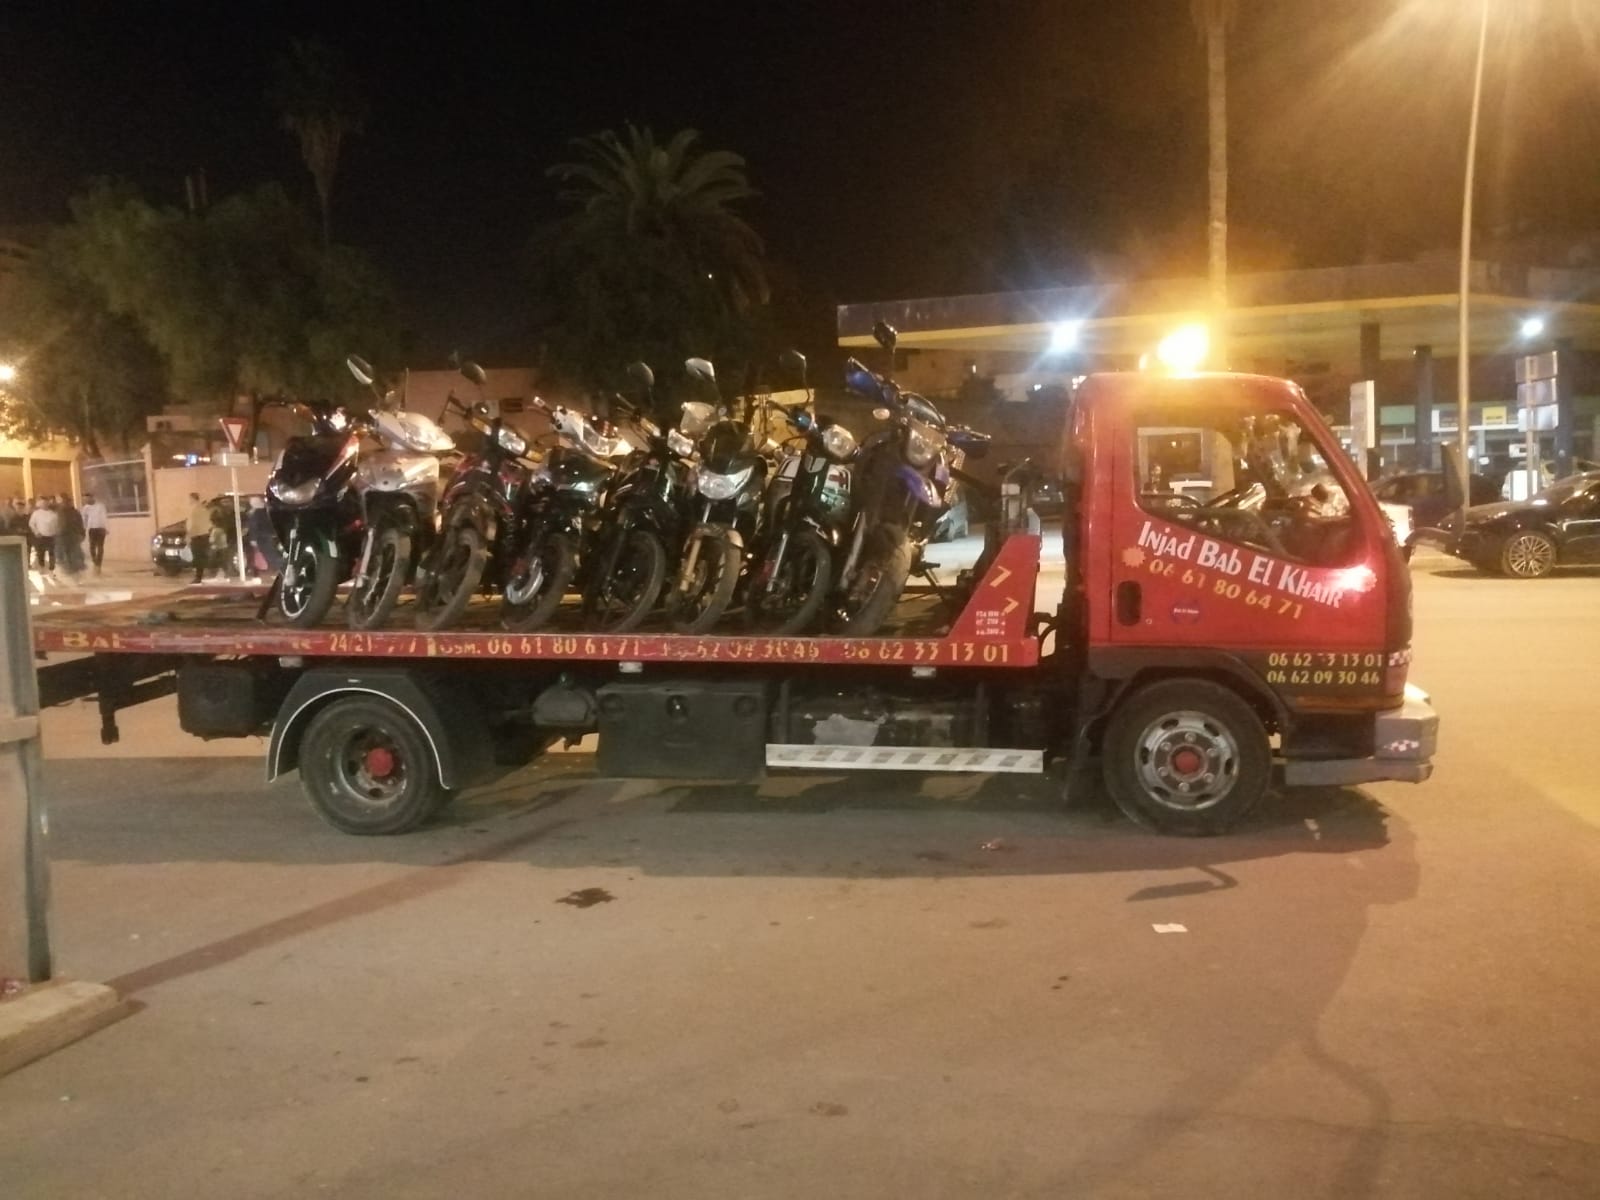 برافو… شرطة المرور ببني ملال تدشن حملة واسعة وتحجز عشرات الدراجات النارية المُخالفة للقانون والساكنة تستحسن